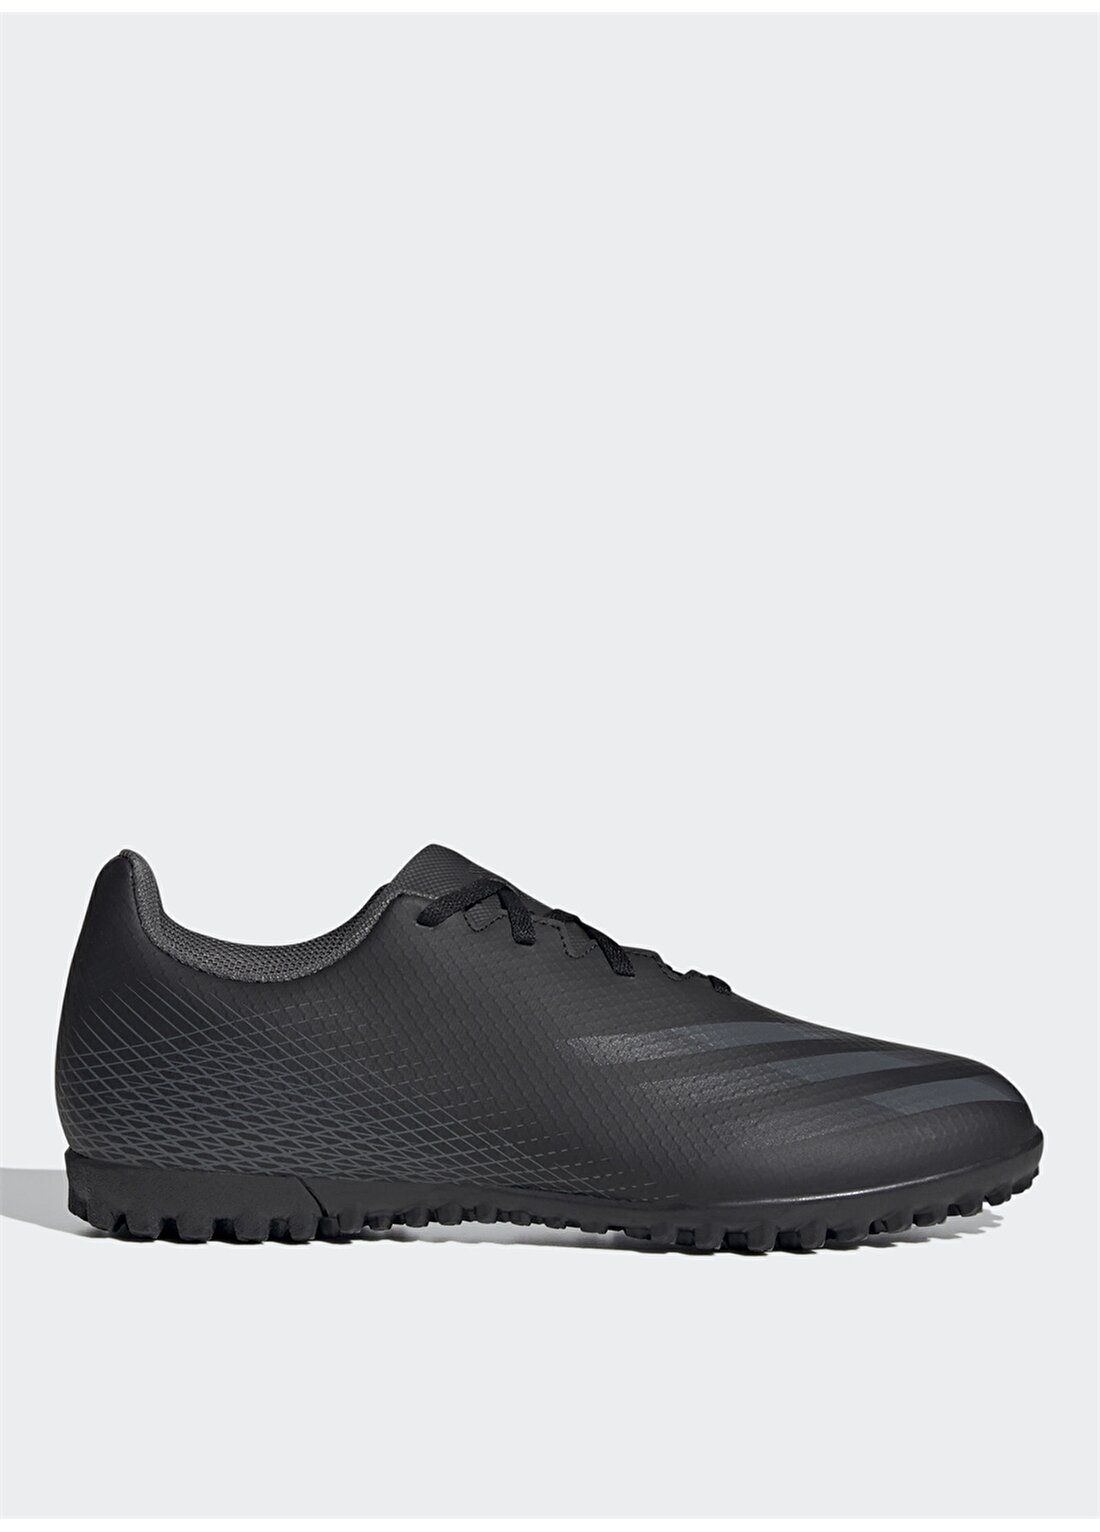 Adidas EG8236 X GHOSTED.4 TF Erkek Futbol Ayakkabısı